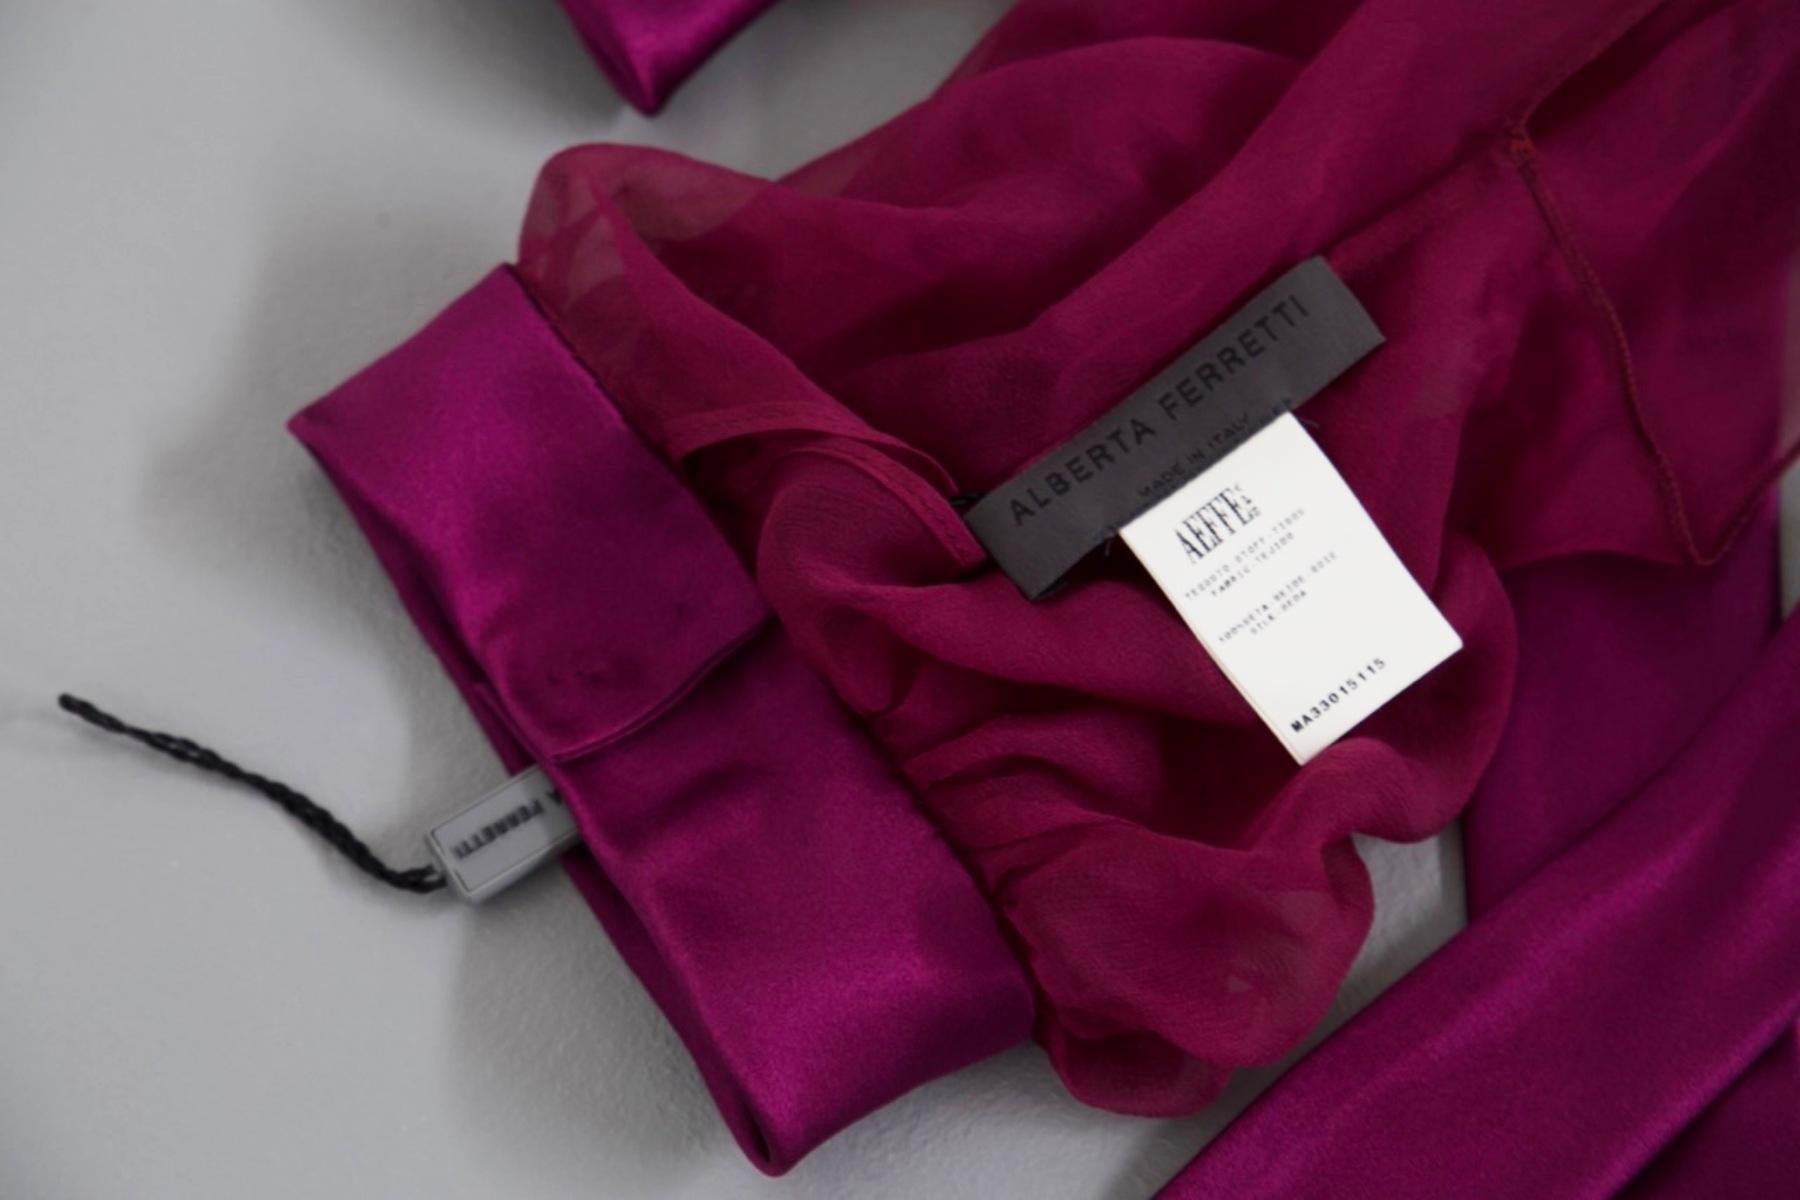 Wunderschöne violette Schulterbedeckung, entworfen von Alberta Ferretti in den 1990er Jahren, feine italienische Handwerkskunst.
ORIGINALETIKETT.
Die Schulter Abdeckung ist aus einem sehr weichen Stoff, eklektische lila Farbe, spektakulär